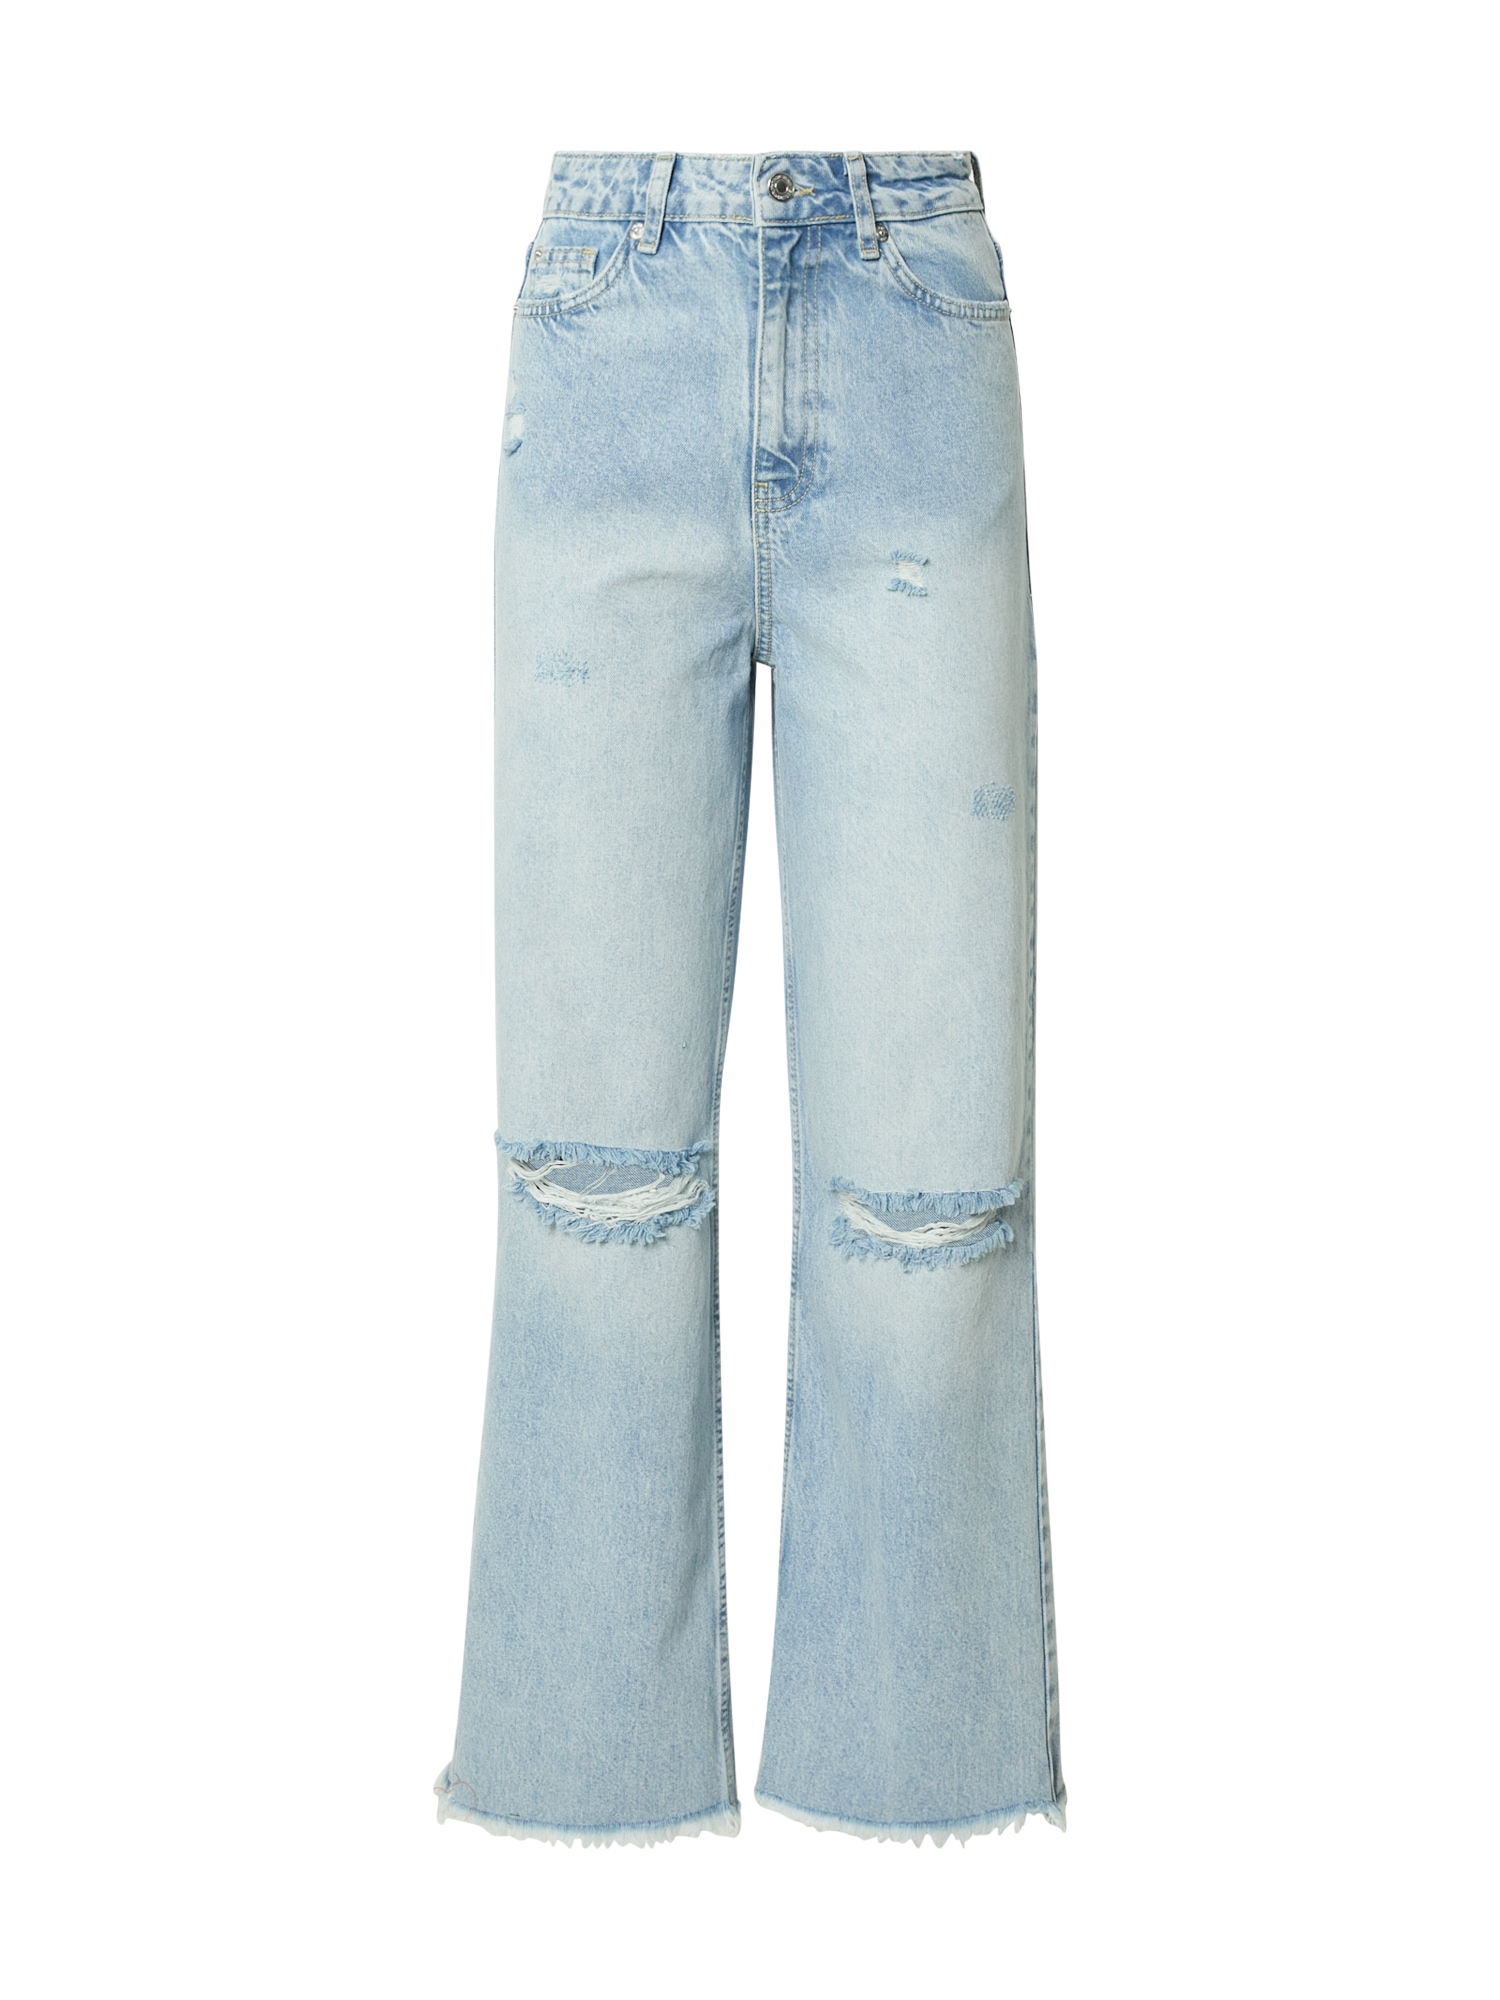 Jeans 'Noosa' von New Look